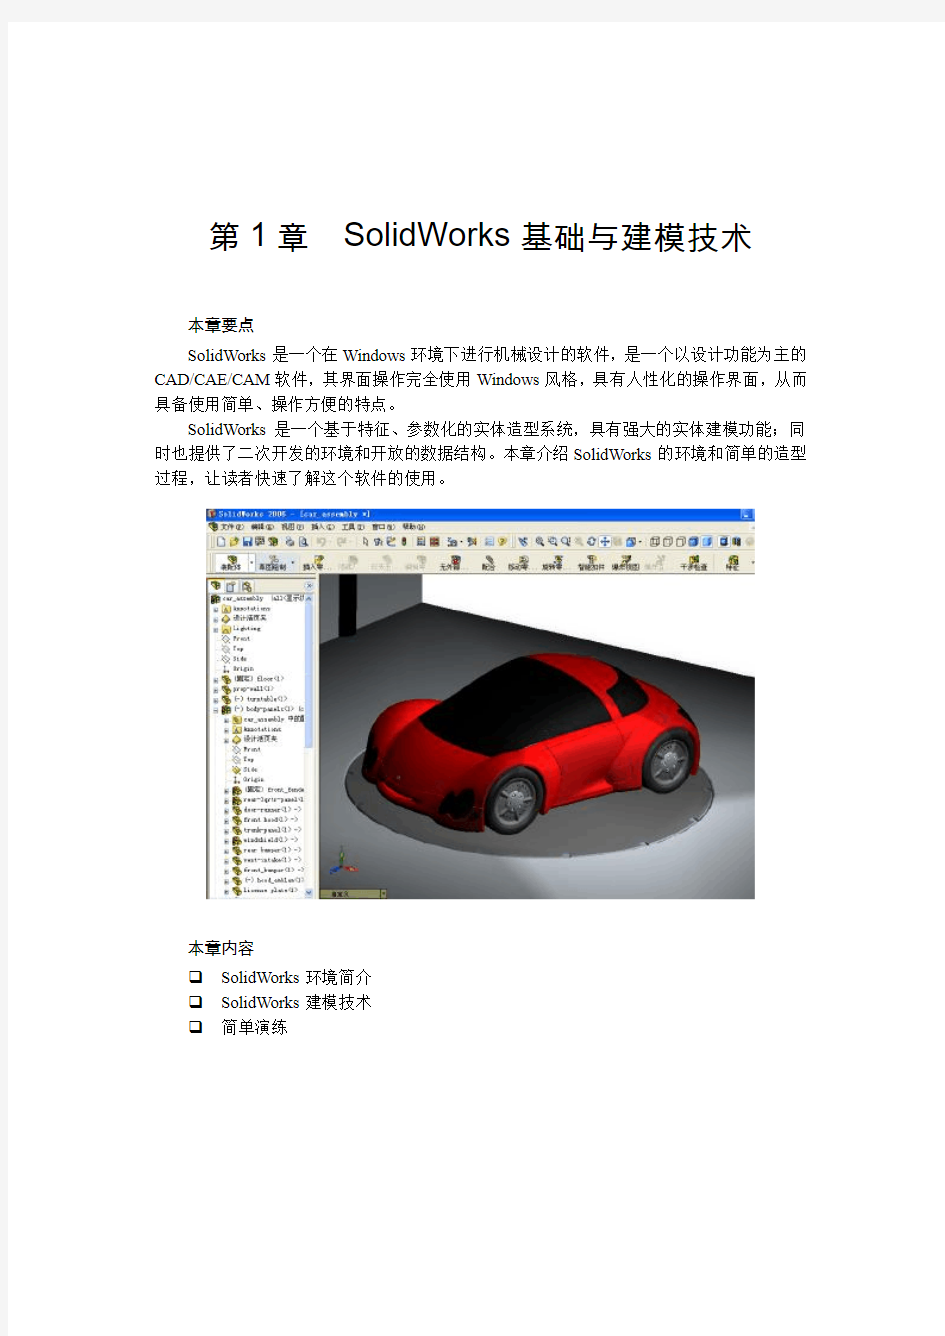 SolidWorks入门+钣金设计+材料知识集合